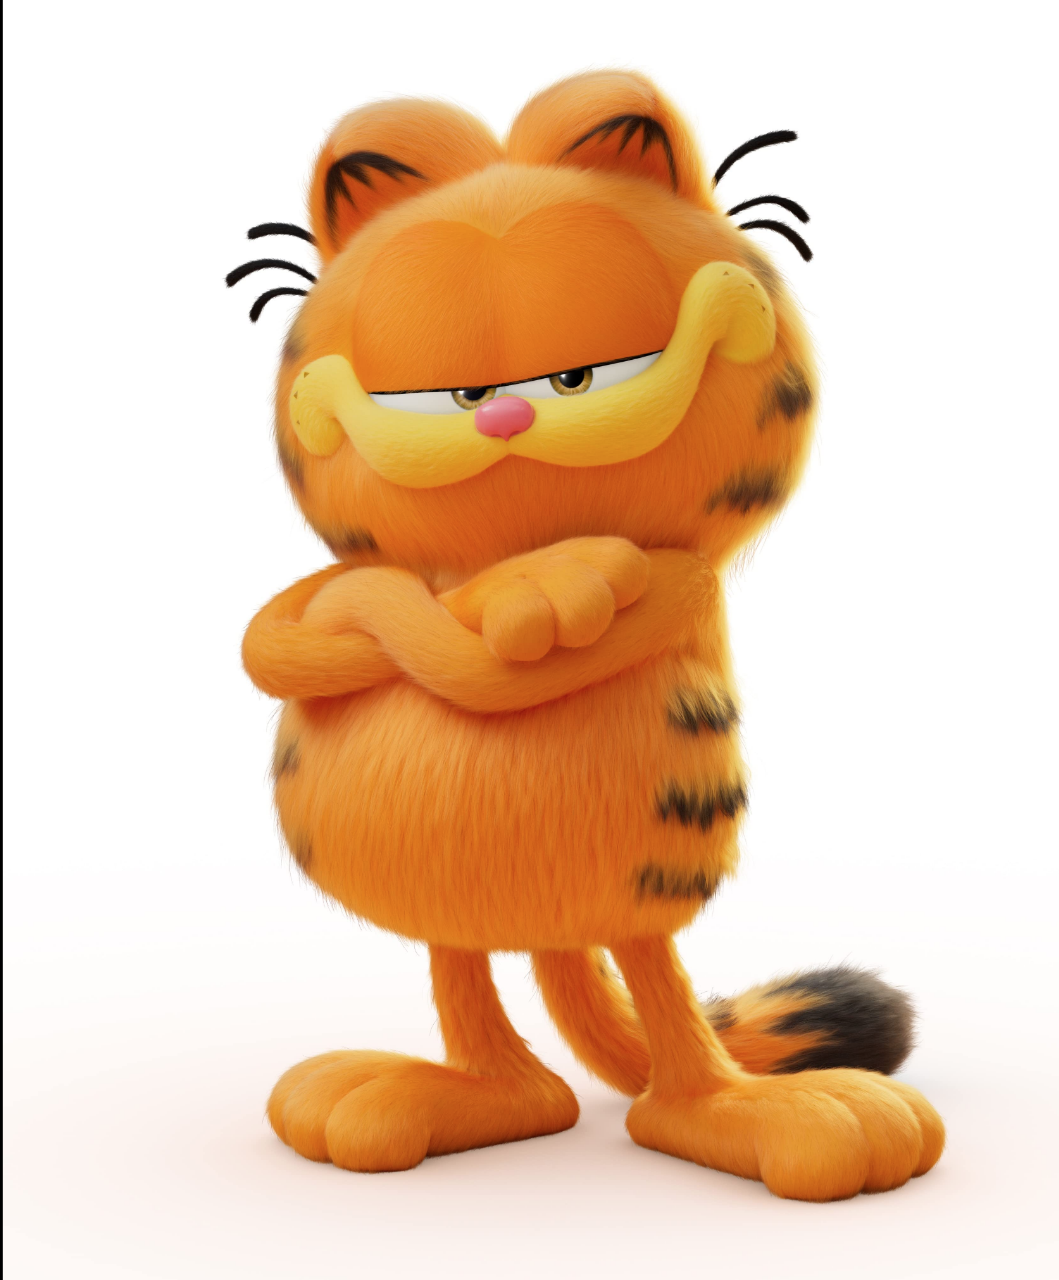 Cumple Garfield 45 años de existencia